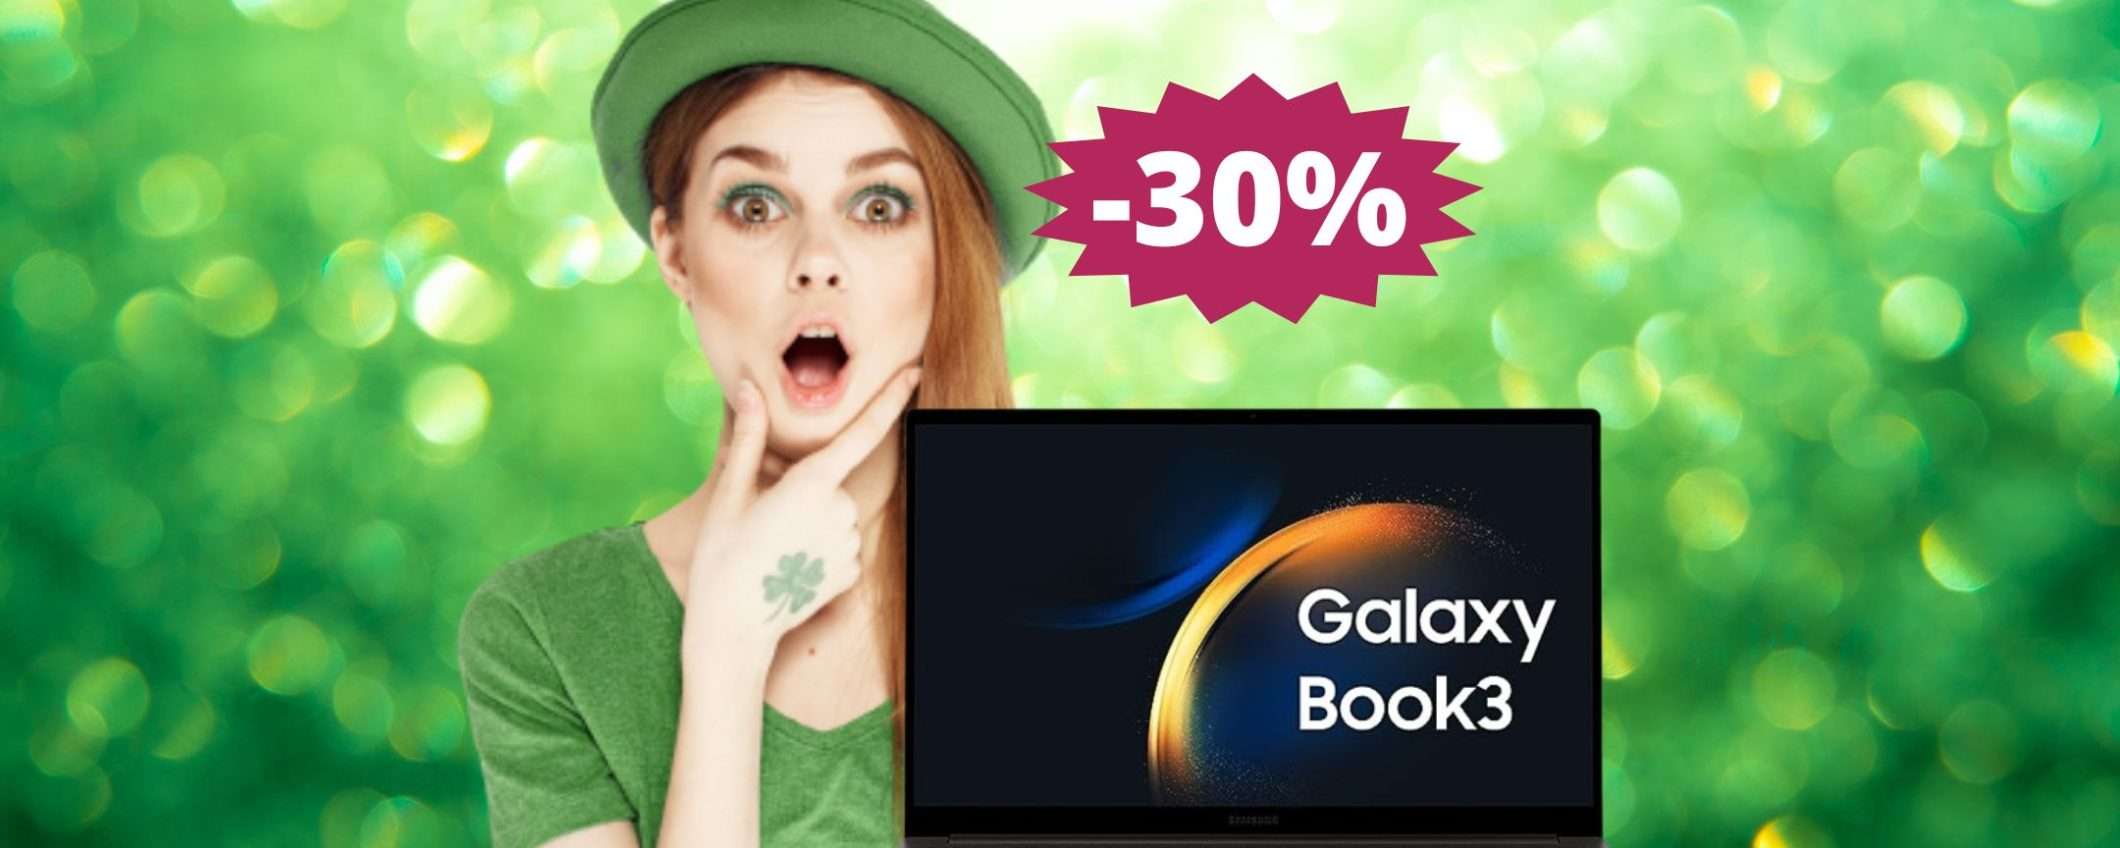 Samsung Galaxy Book3: un'OCCASIONE da non perdere (-30%)